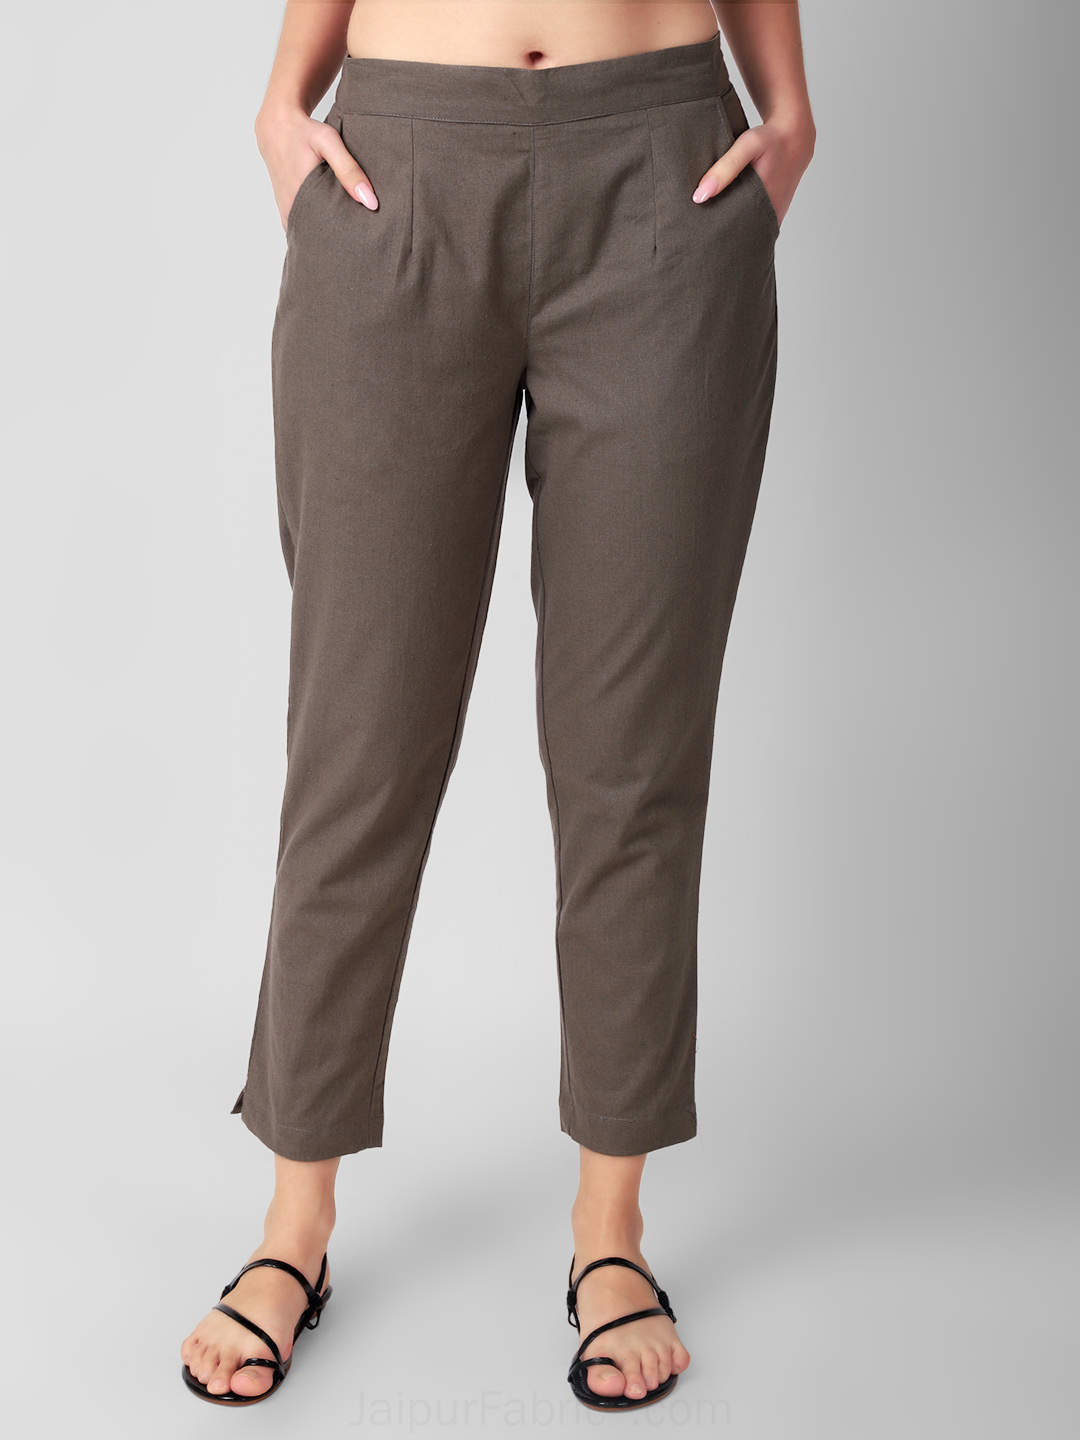 Buy Dark Grey Trousers  Pants for Women by Park Avenue Women Online   Ajiocom